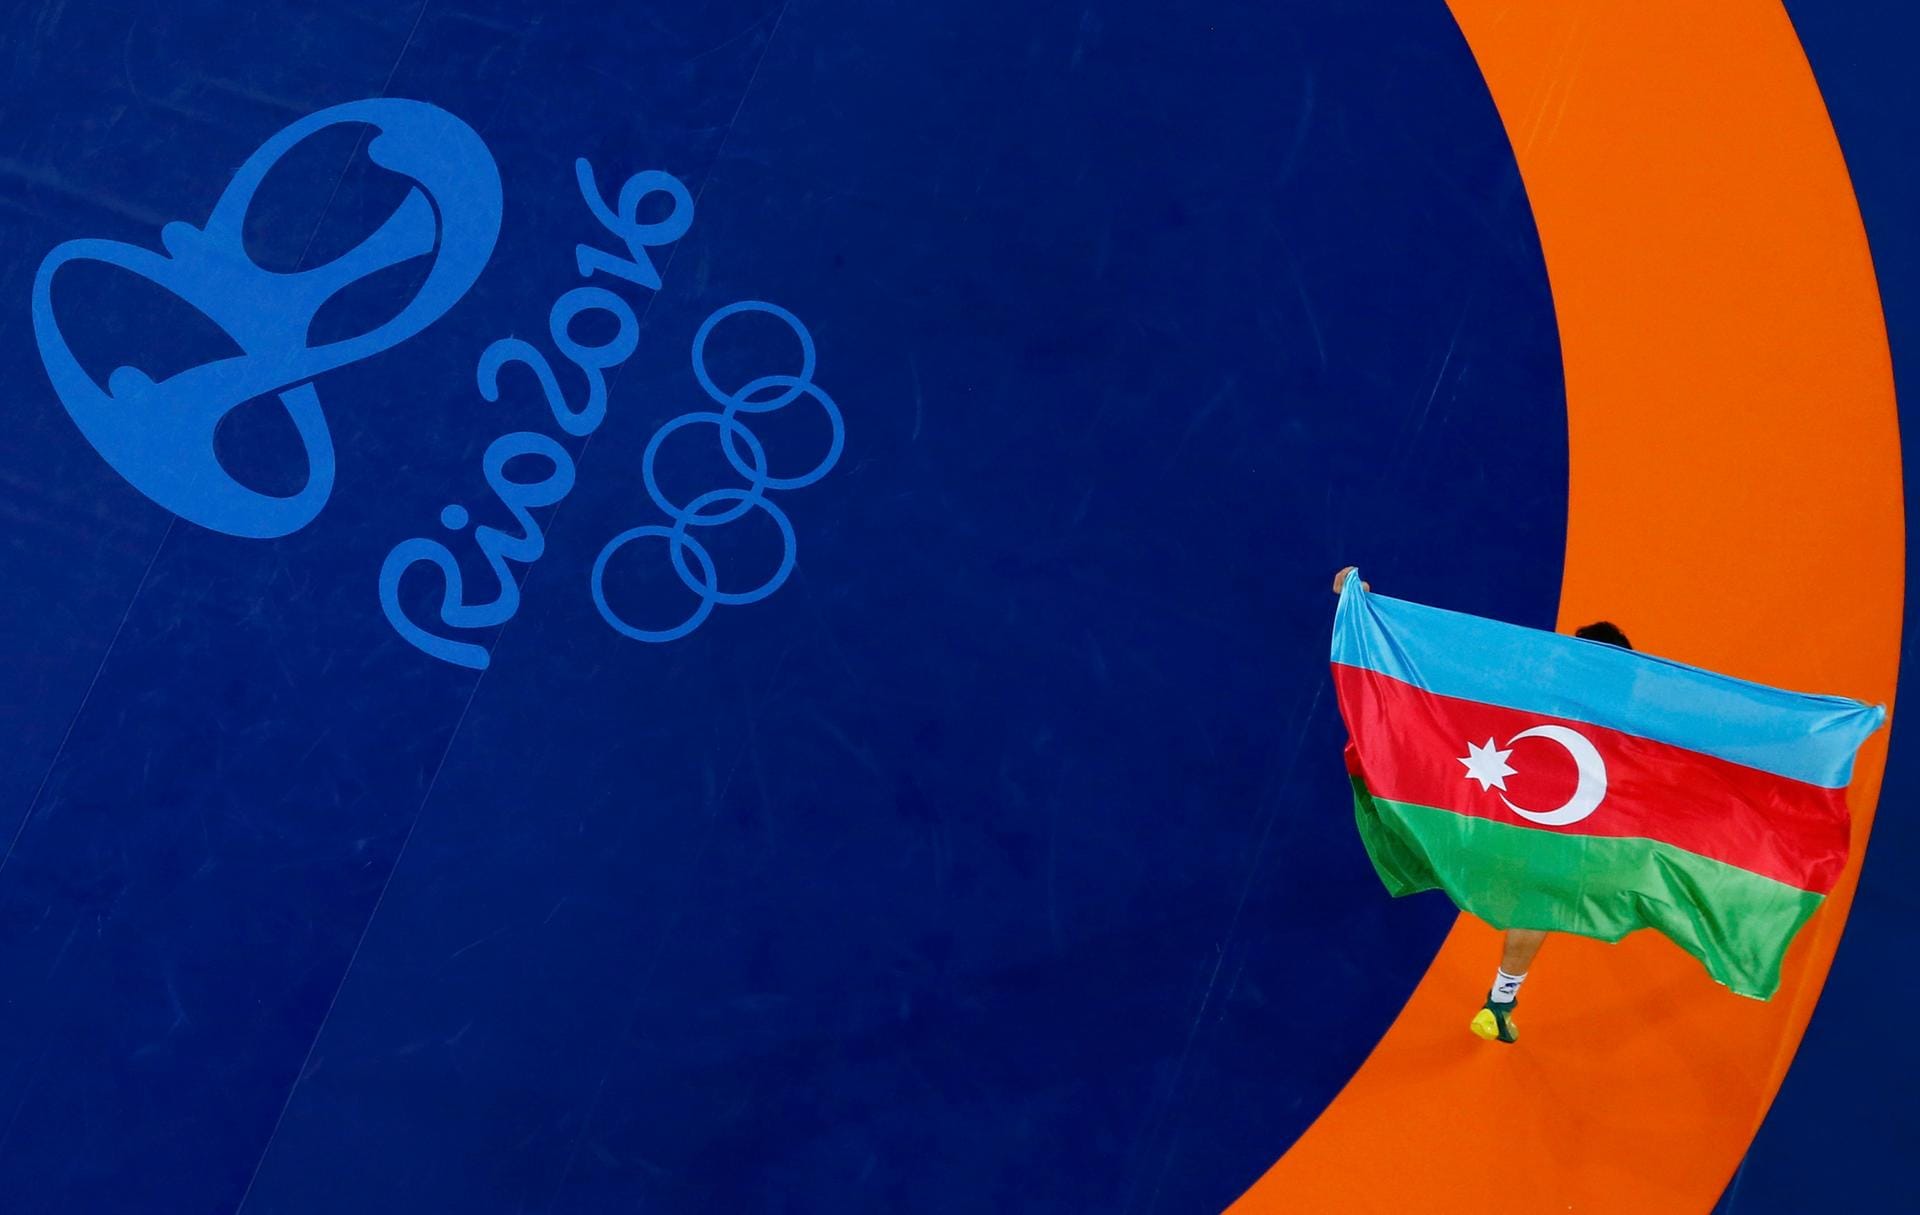 Die laufende Fahne. Stolz trägt der Aserbaidschaner Rasul Chunayev die Flagge seines Landes durch die Carioca Arena 2 und feiert seine Bronzemedaille im Ringen bis 66 Kilogramm im griechisch-römischen Stil.